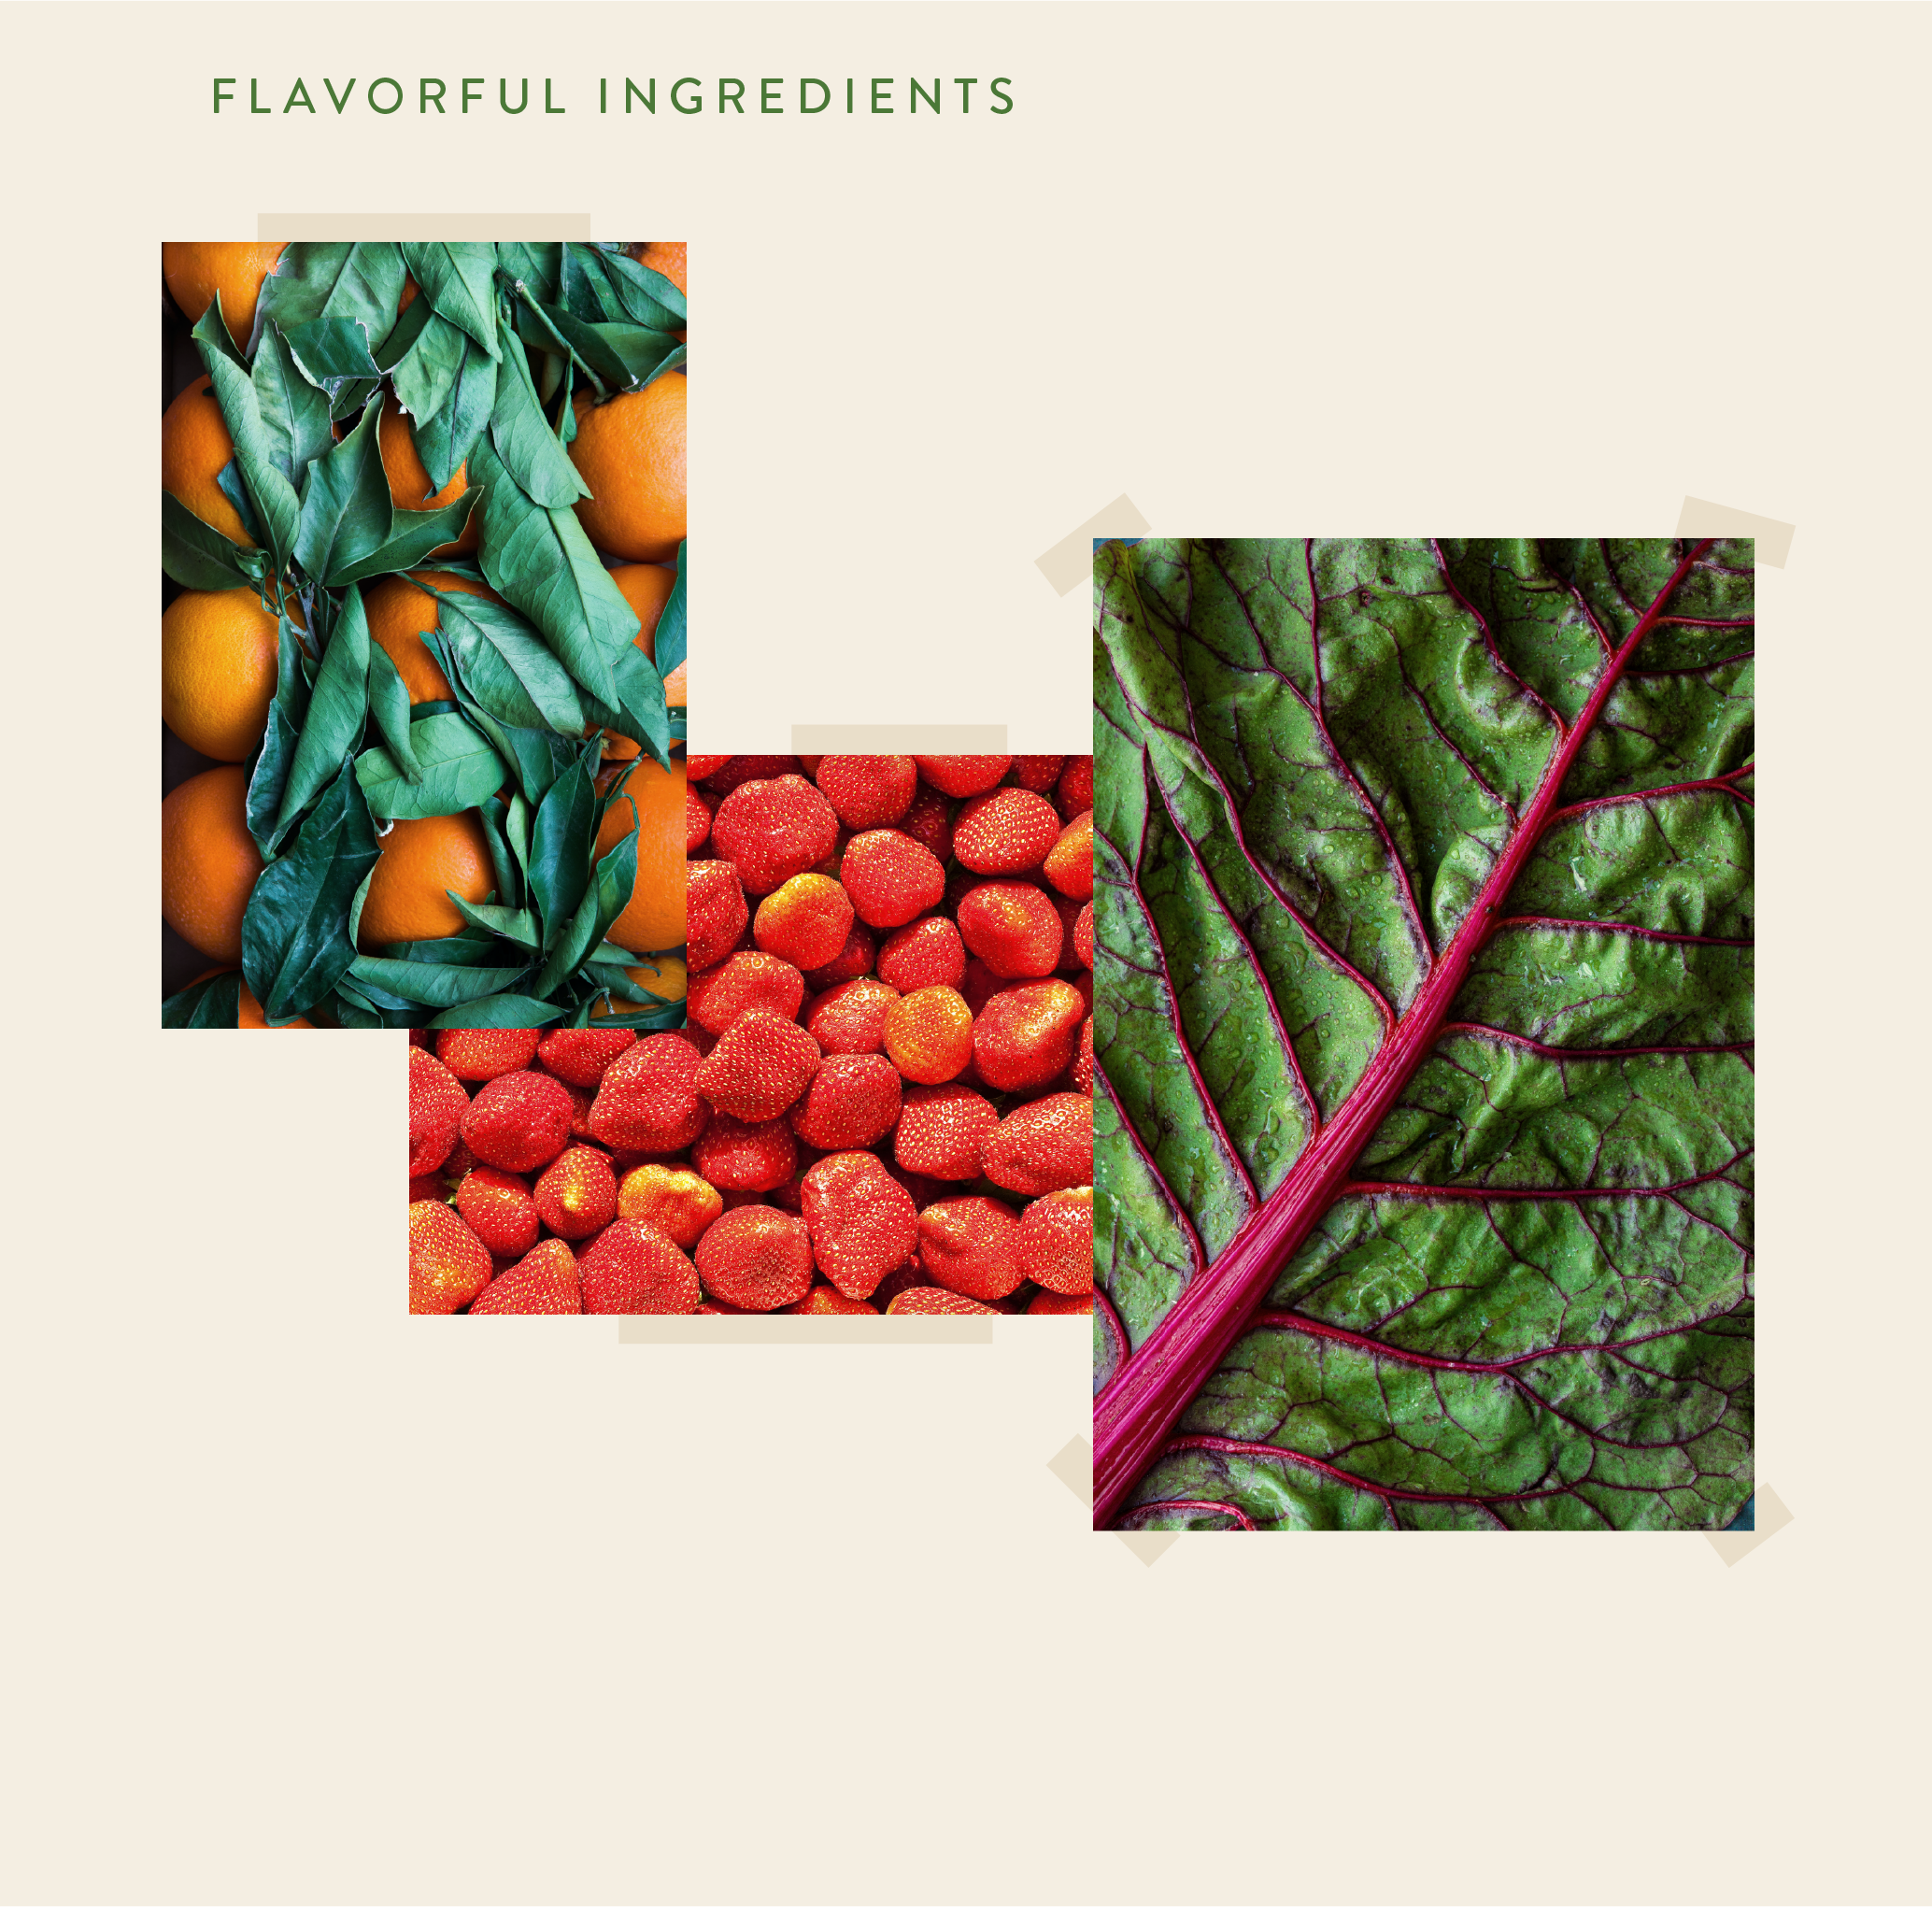 Test_Flavorful Ingredients.png